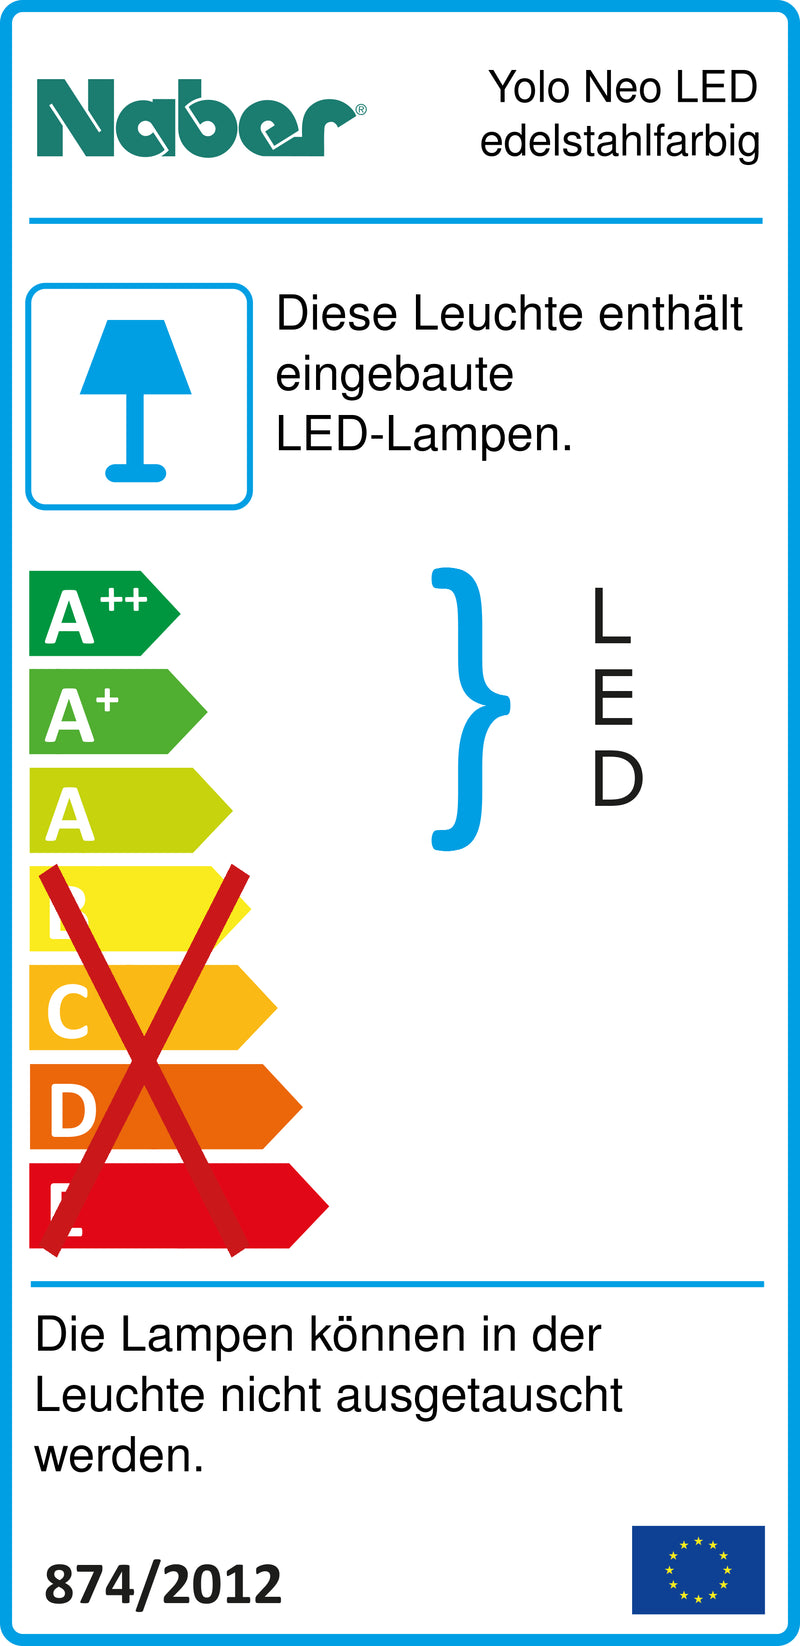 E-Label zu Zeichnung zu Yolo Neo LED edelstahlfarbig als Variante Einzelleuchte m. S., 3000 K warmweiß von Naber GmbH in der Kategorie Lichttechnik in Österreich auf conceptshop.at